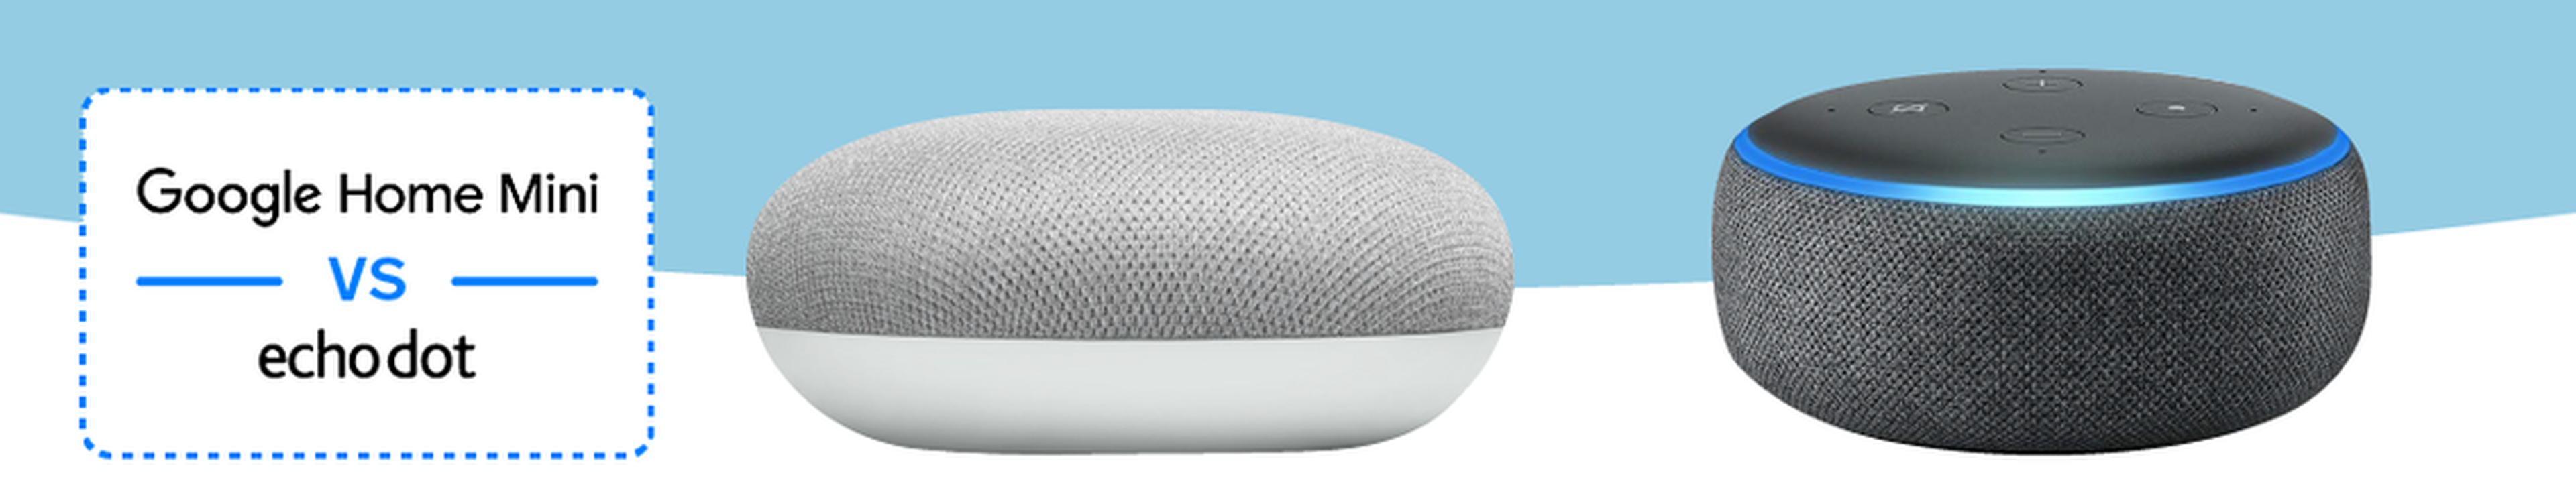 Comparación Google Home Mini & Amazon Echo Dot